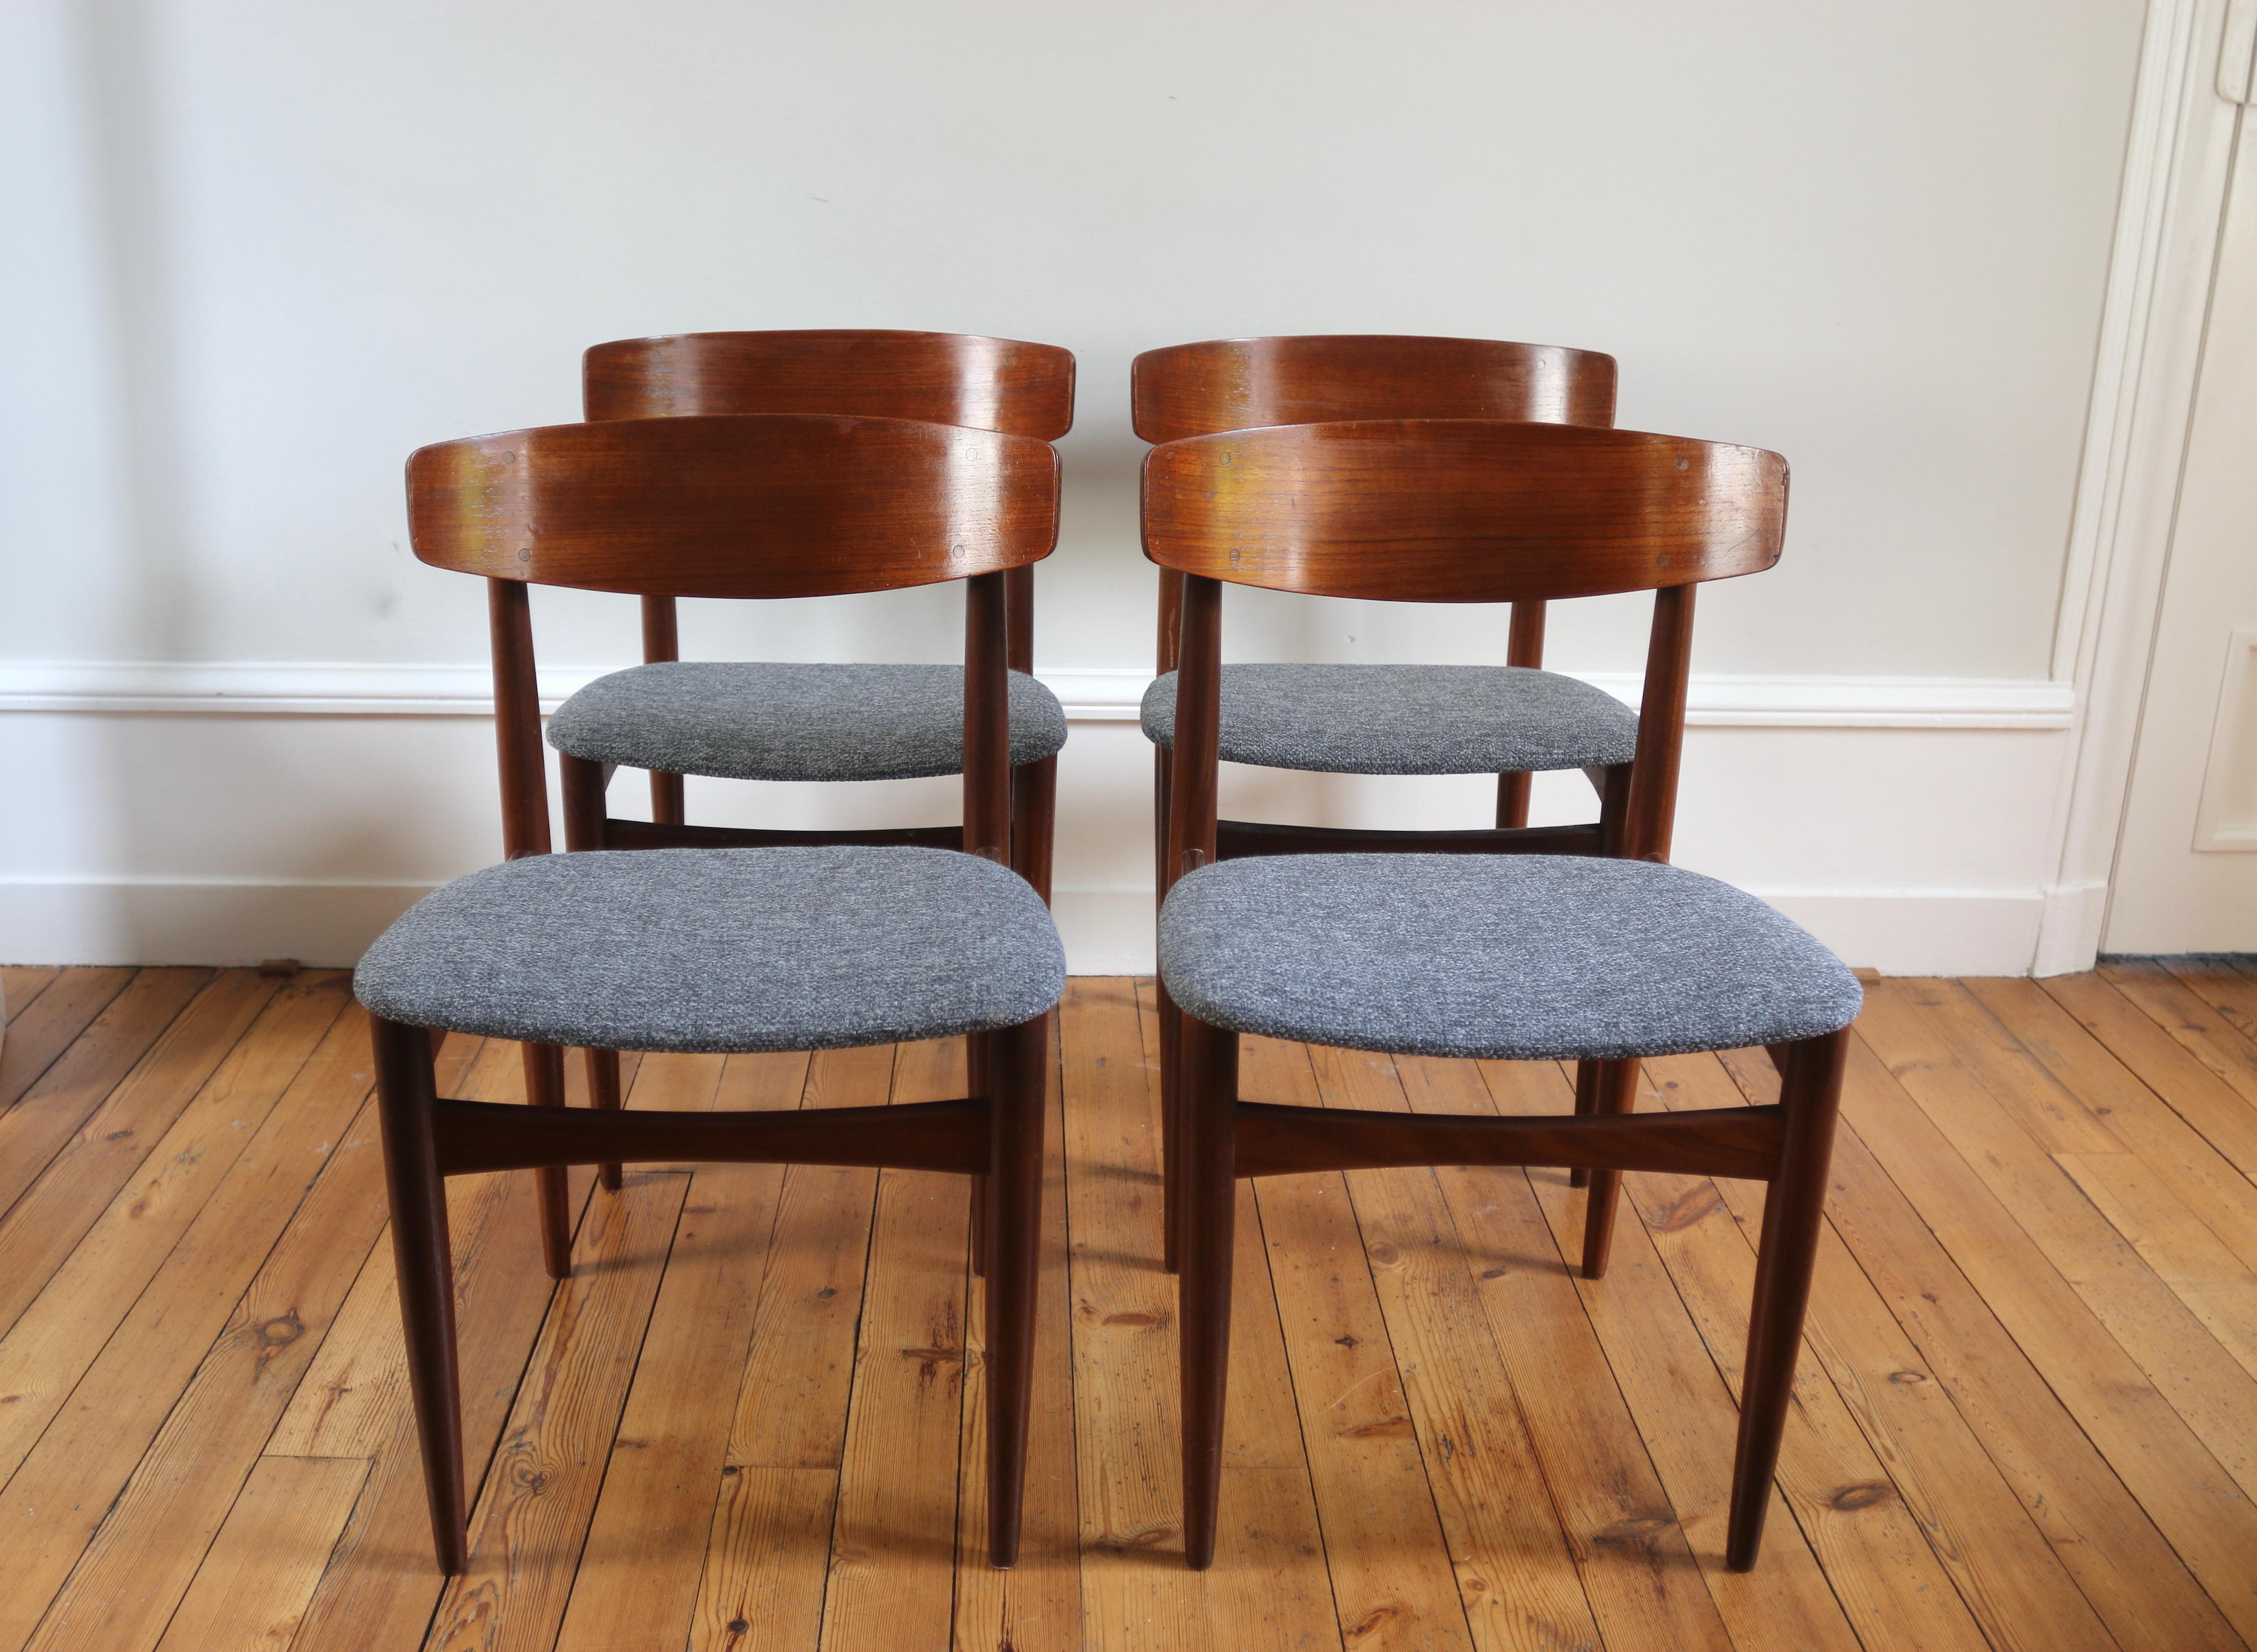 Superbe série de chaises scandinaves vintage en teck signée H. W. Klein pour Bramin 

distribuée par Samcom et Roche Bobois dans les années 60. 

En très bon état, assises refaites par un tapissier (mousse et tissu neufs). 
seul à noter quelques